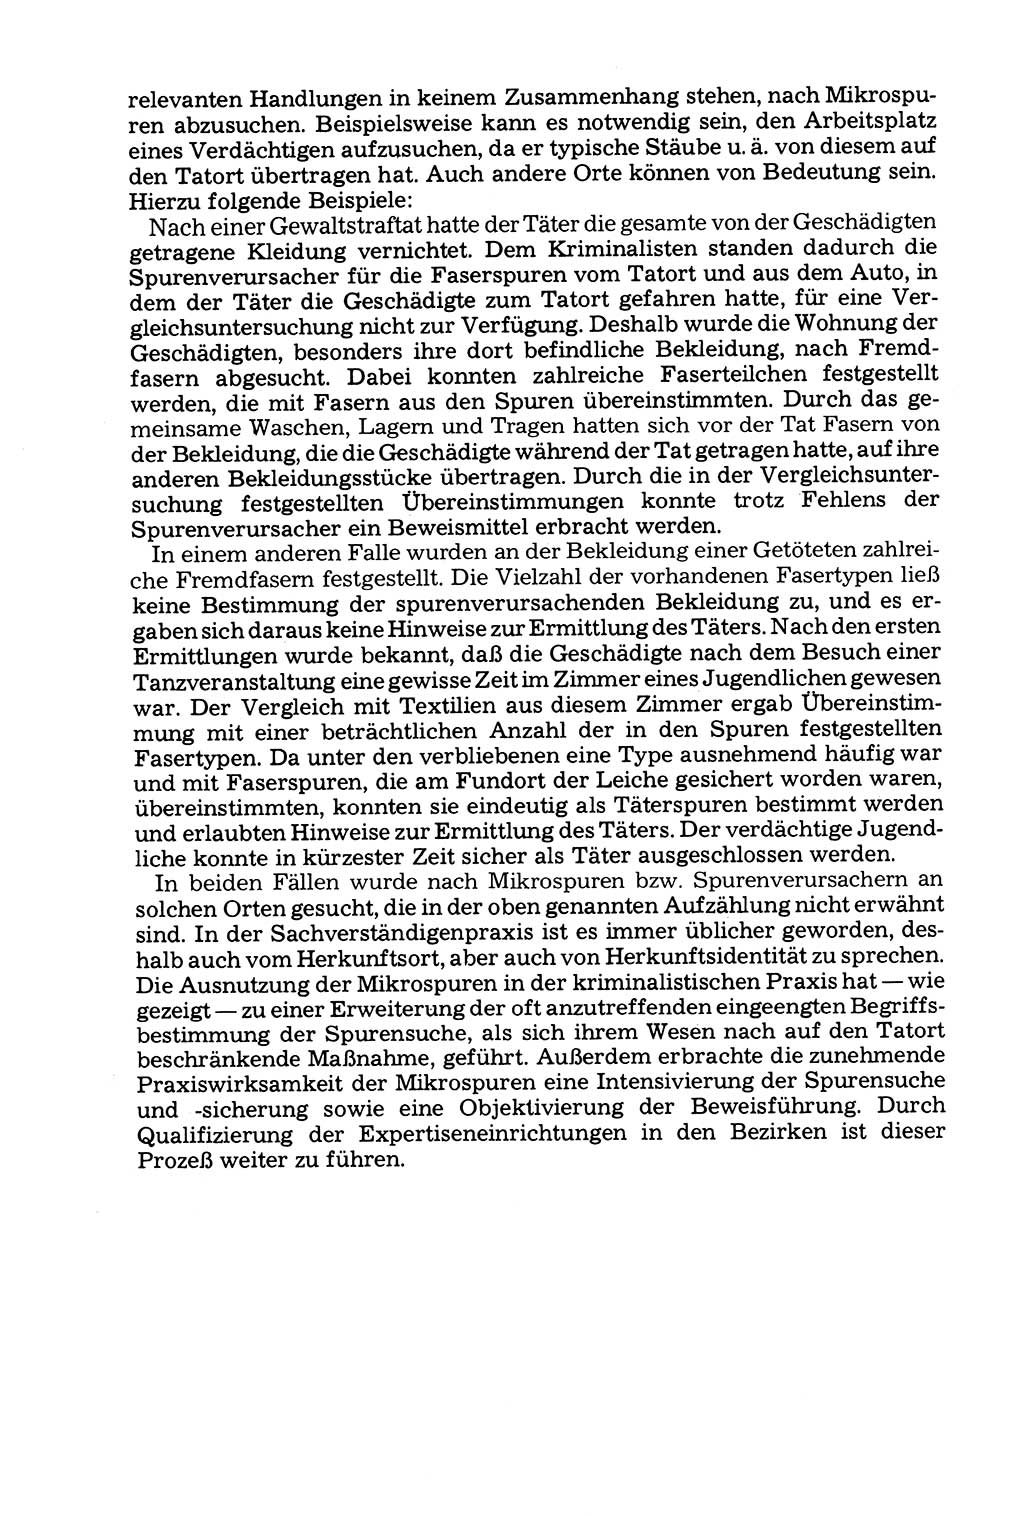 Grundfragen der Beweisführung im Ermittlungsverfahren [Deutsche Demokratische Republik (DDR)] 1980, Seite 253 (Bws.-Fhrg. EV DDR 1980, S. 253)